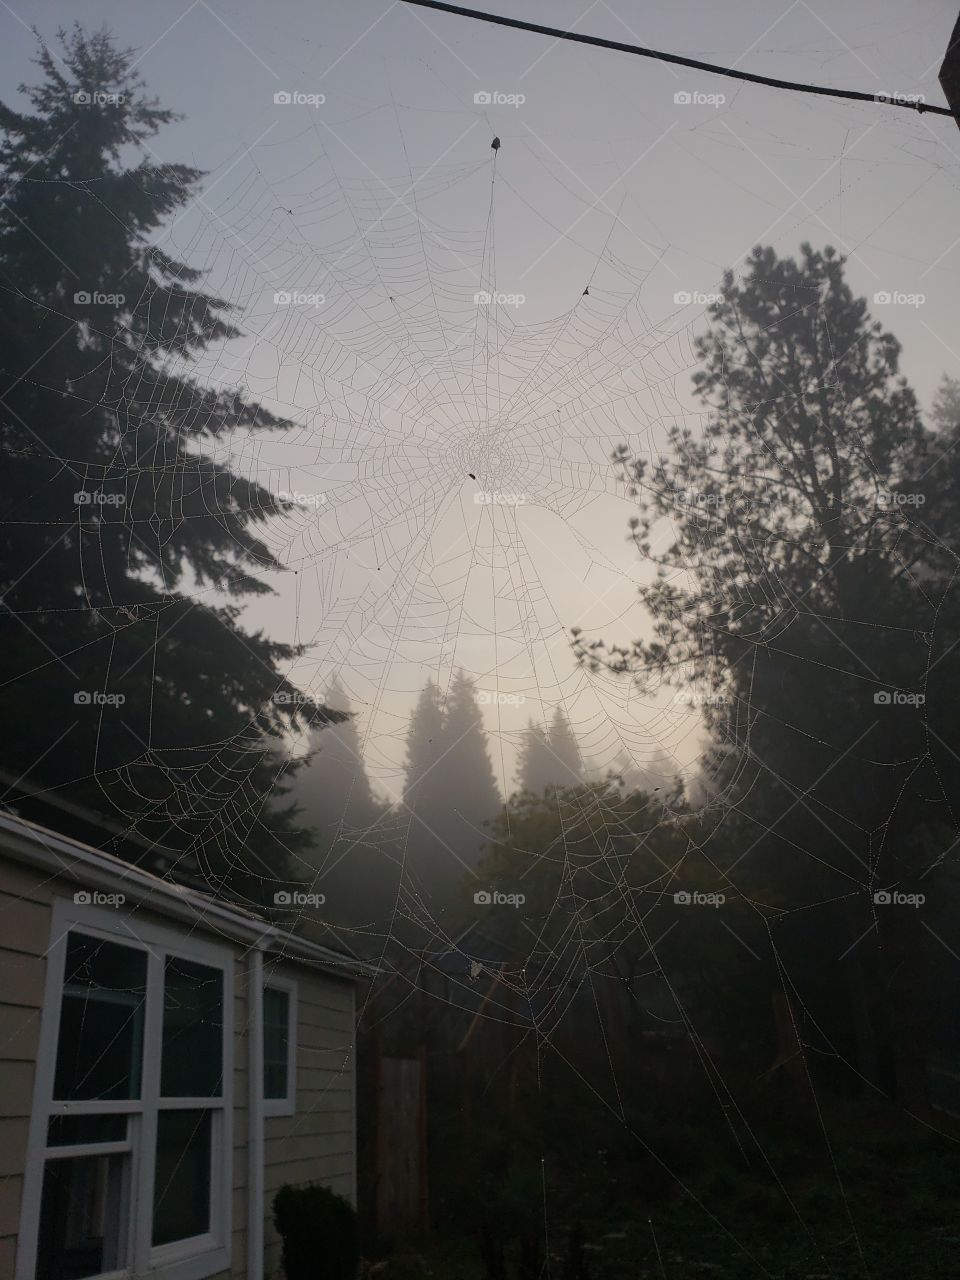 Spooky web